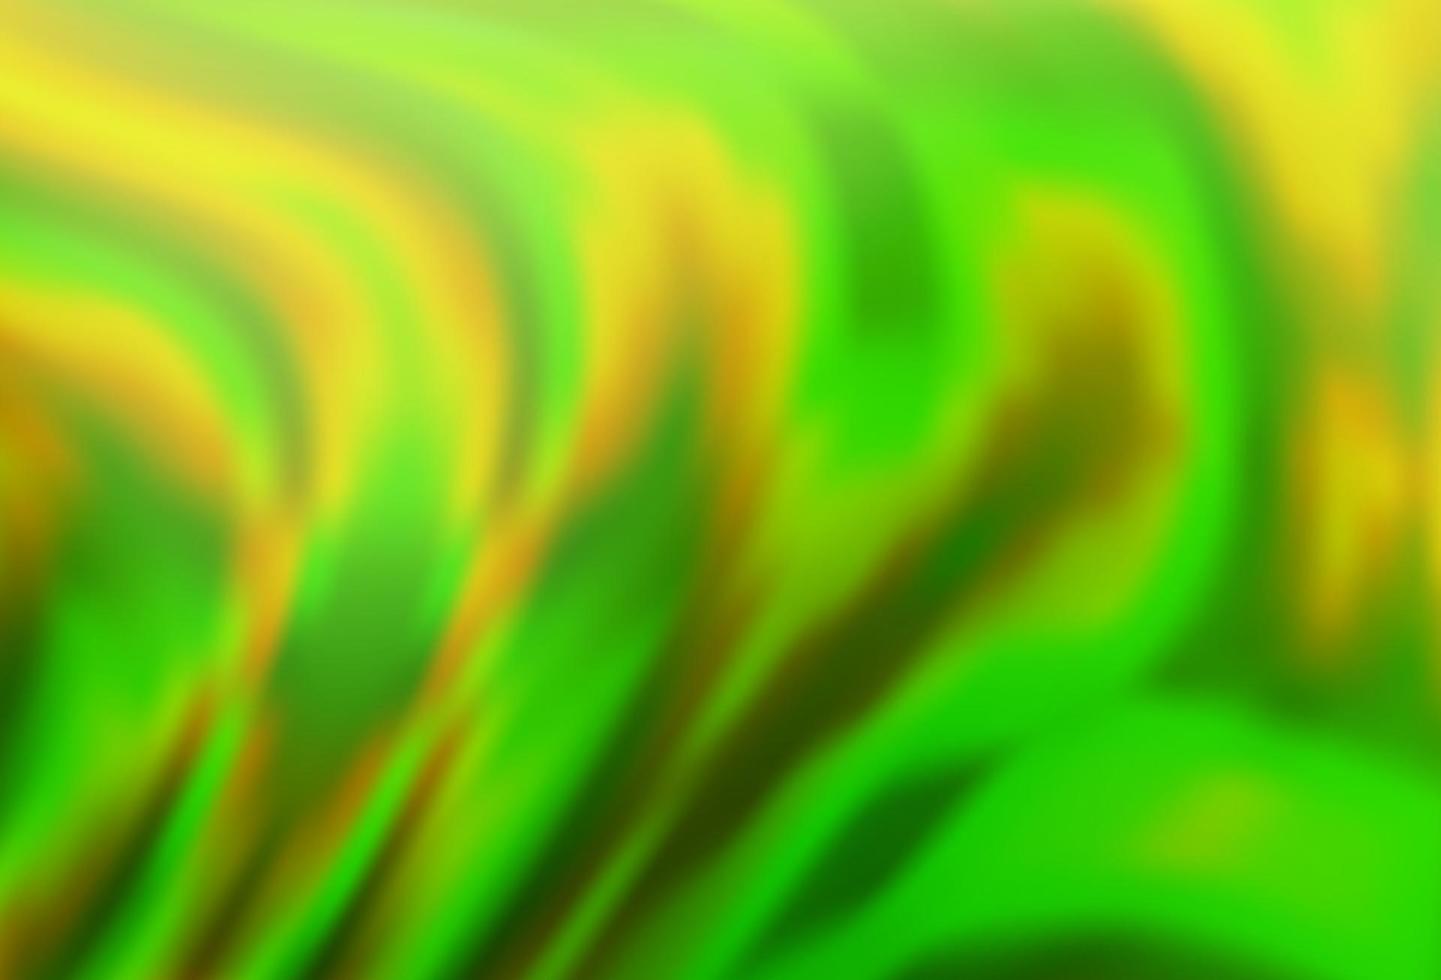 modelo de vetor verde claro com linhas abstratas.